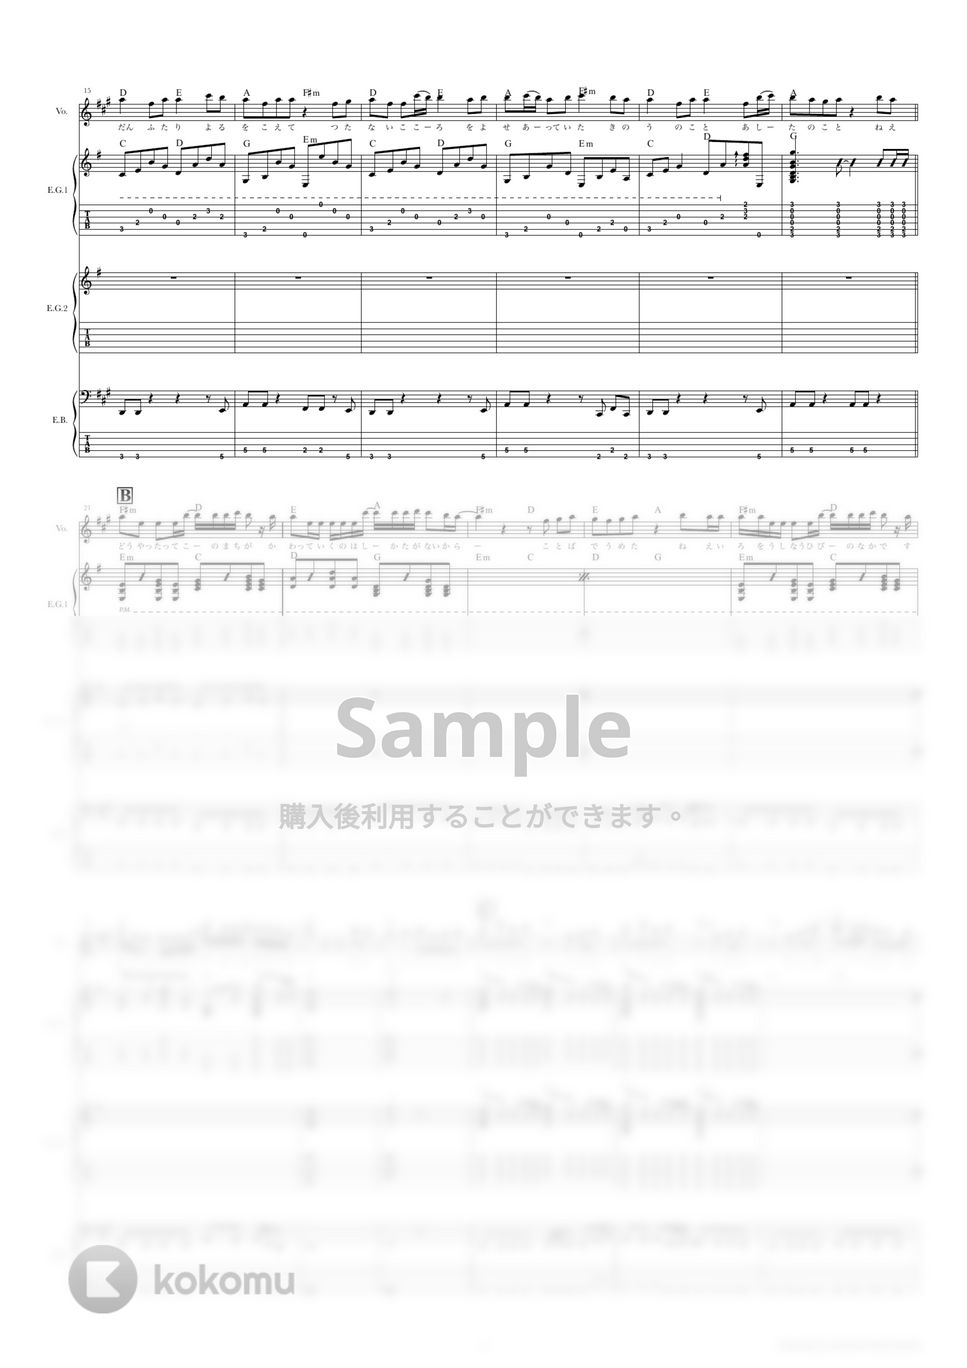 バルーン - 朝を呑む (ギタースコア・歌詞・コード付き) by TRIAD GUITAR SCHOOL